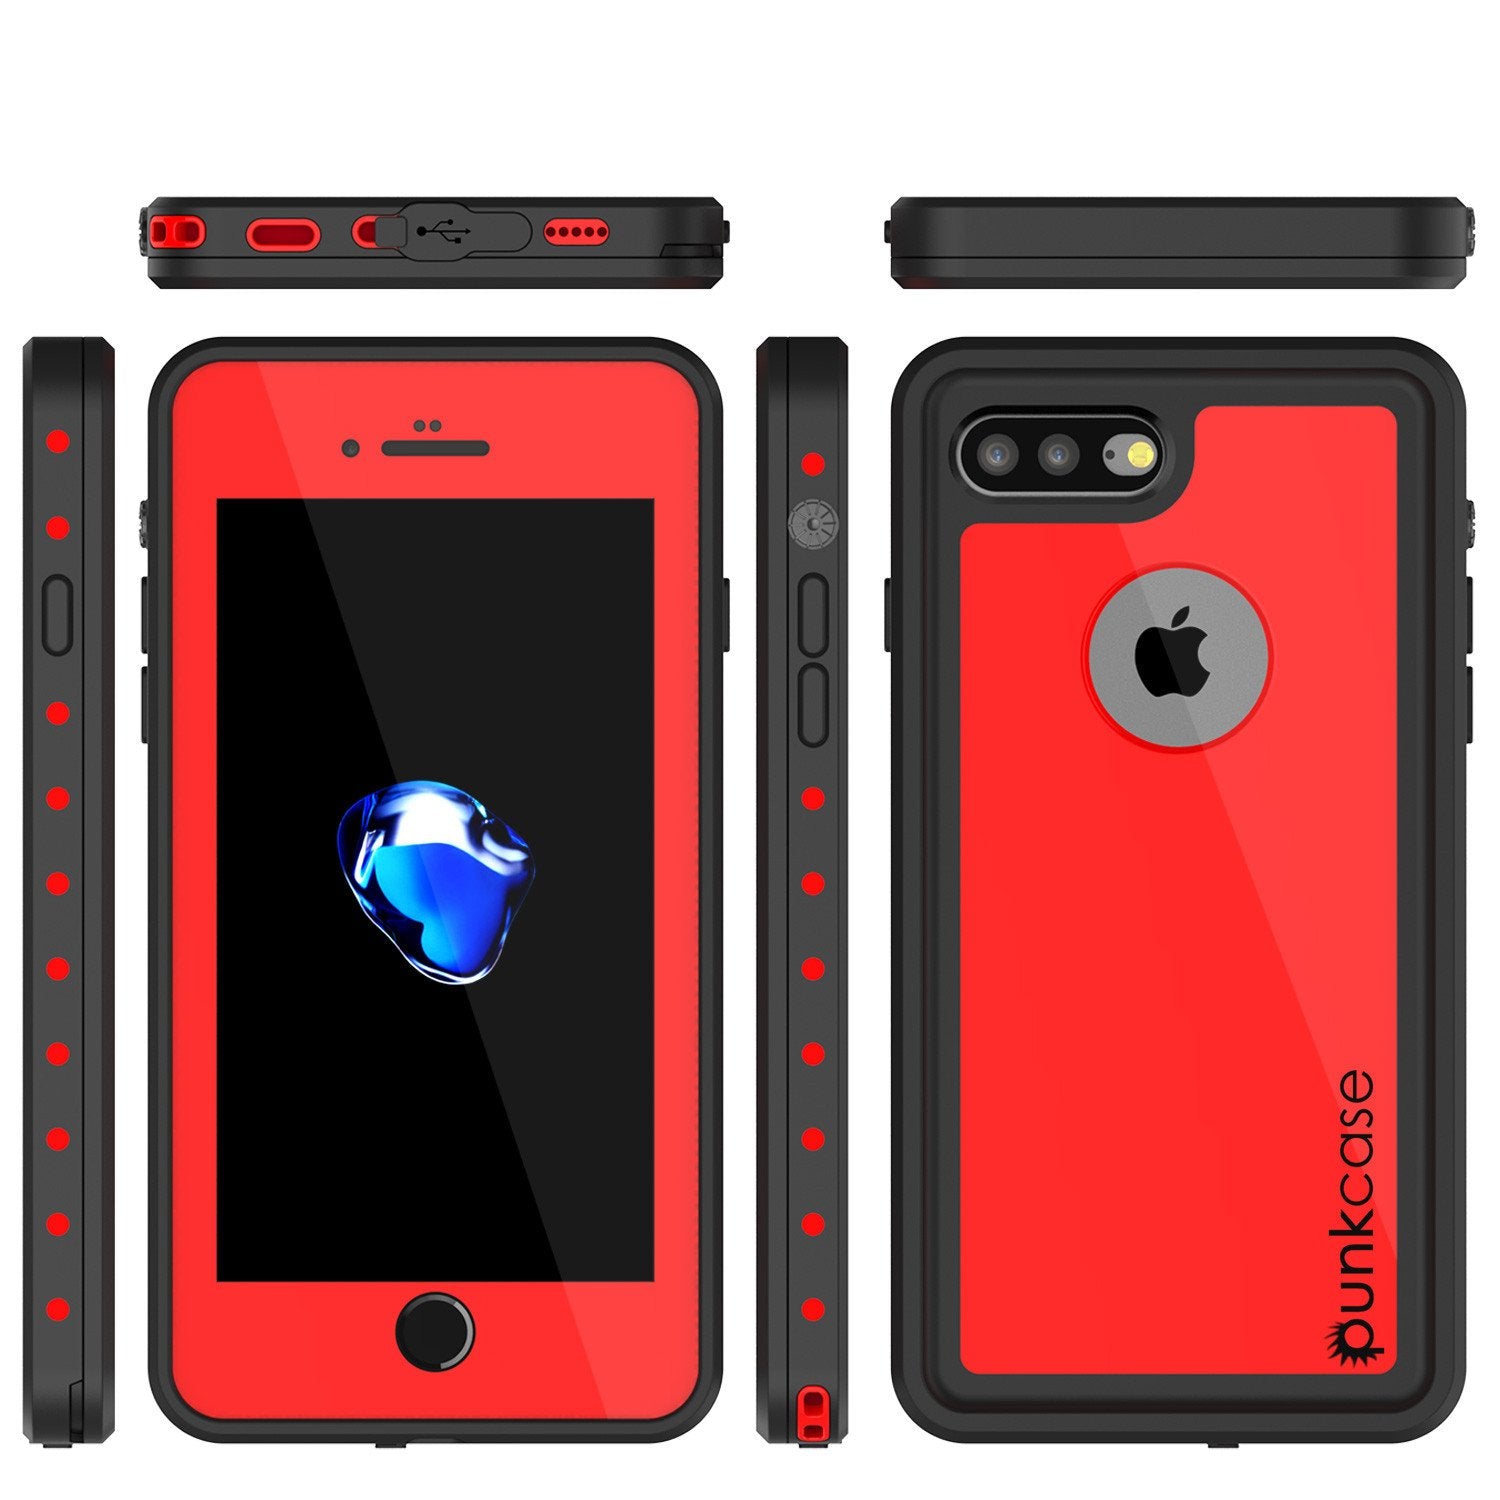 iPhone 8+ Plus Waterproof Case, Punkcase [StudStar Series] [Red] [Slim Fit] [IP68 Certified] [Shockproof] [Dirtproof] Armor Cover